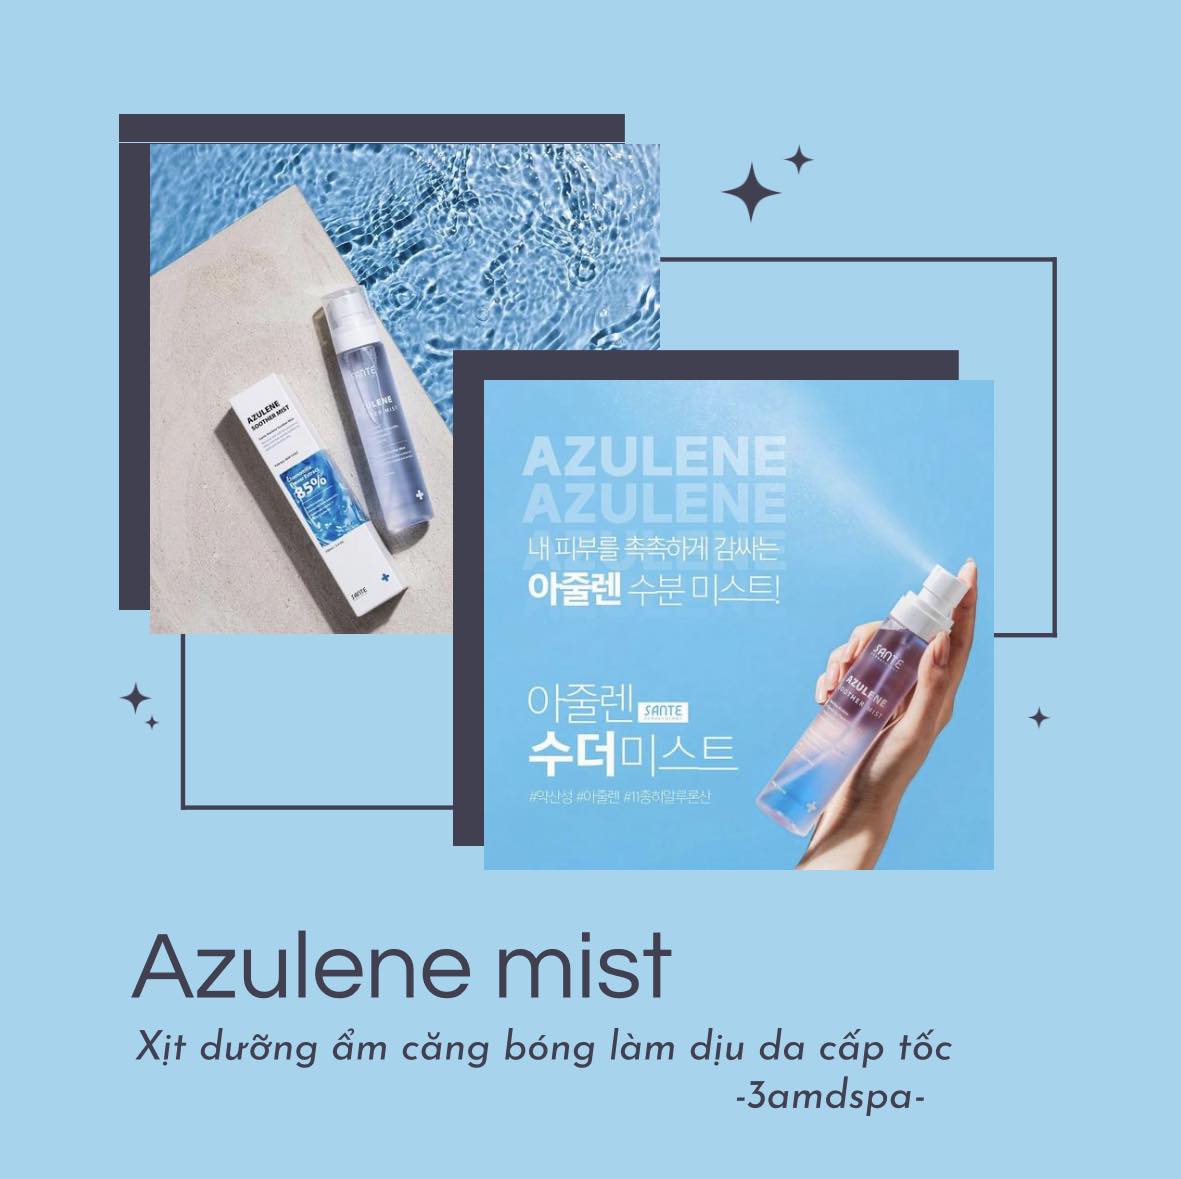 Xịt Khoáng Tế Bào Gốc Siêu Căng Bóng Sante - Azulene Soother Mist ( thay toner ) dành cho cả da đang treatment nhé 👌🏻